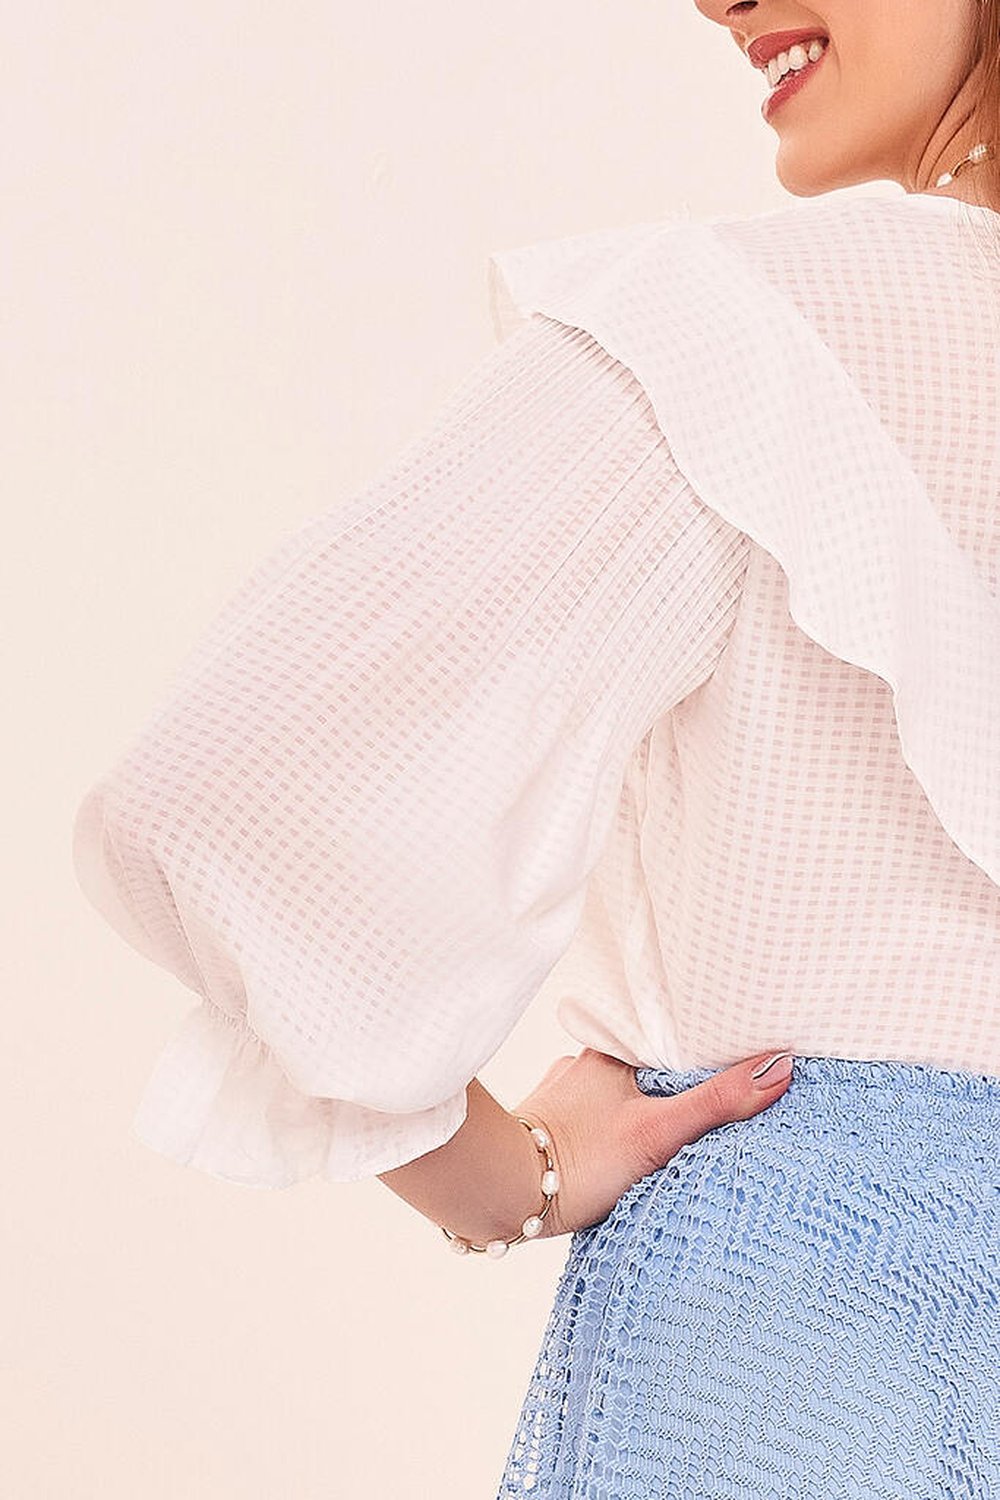 Blusa estampada com mini folho no decote e punhos